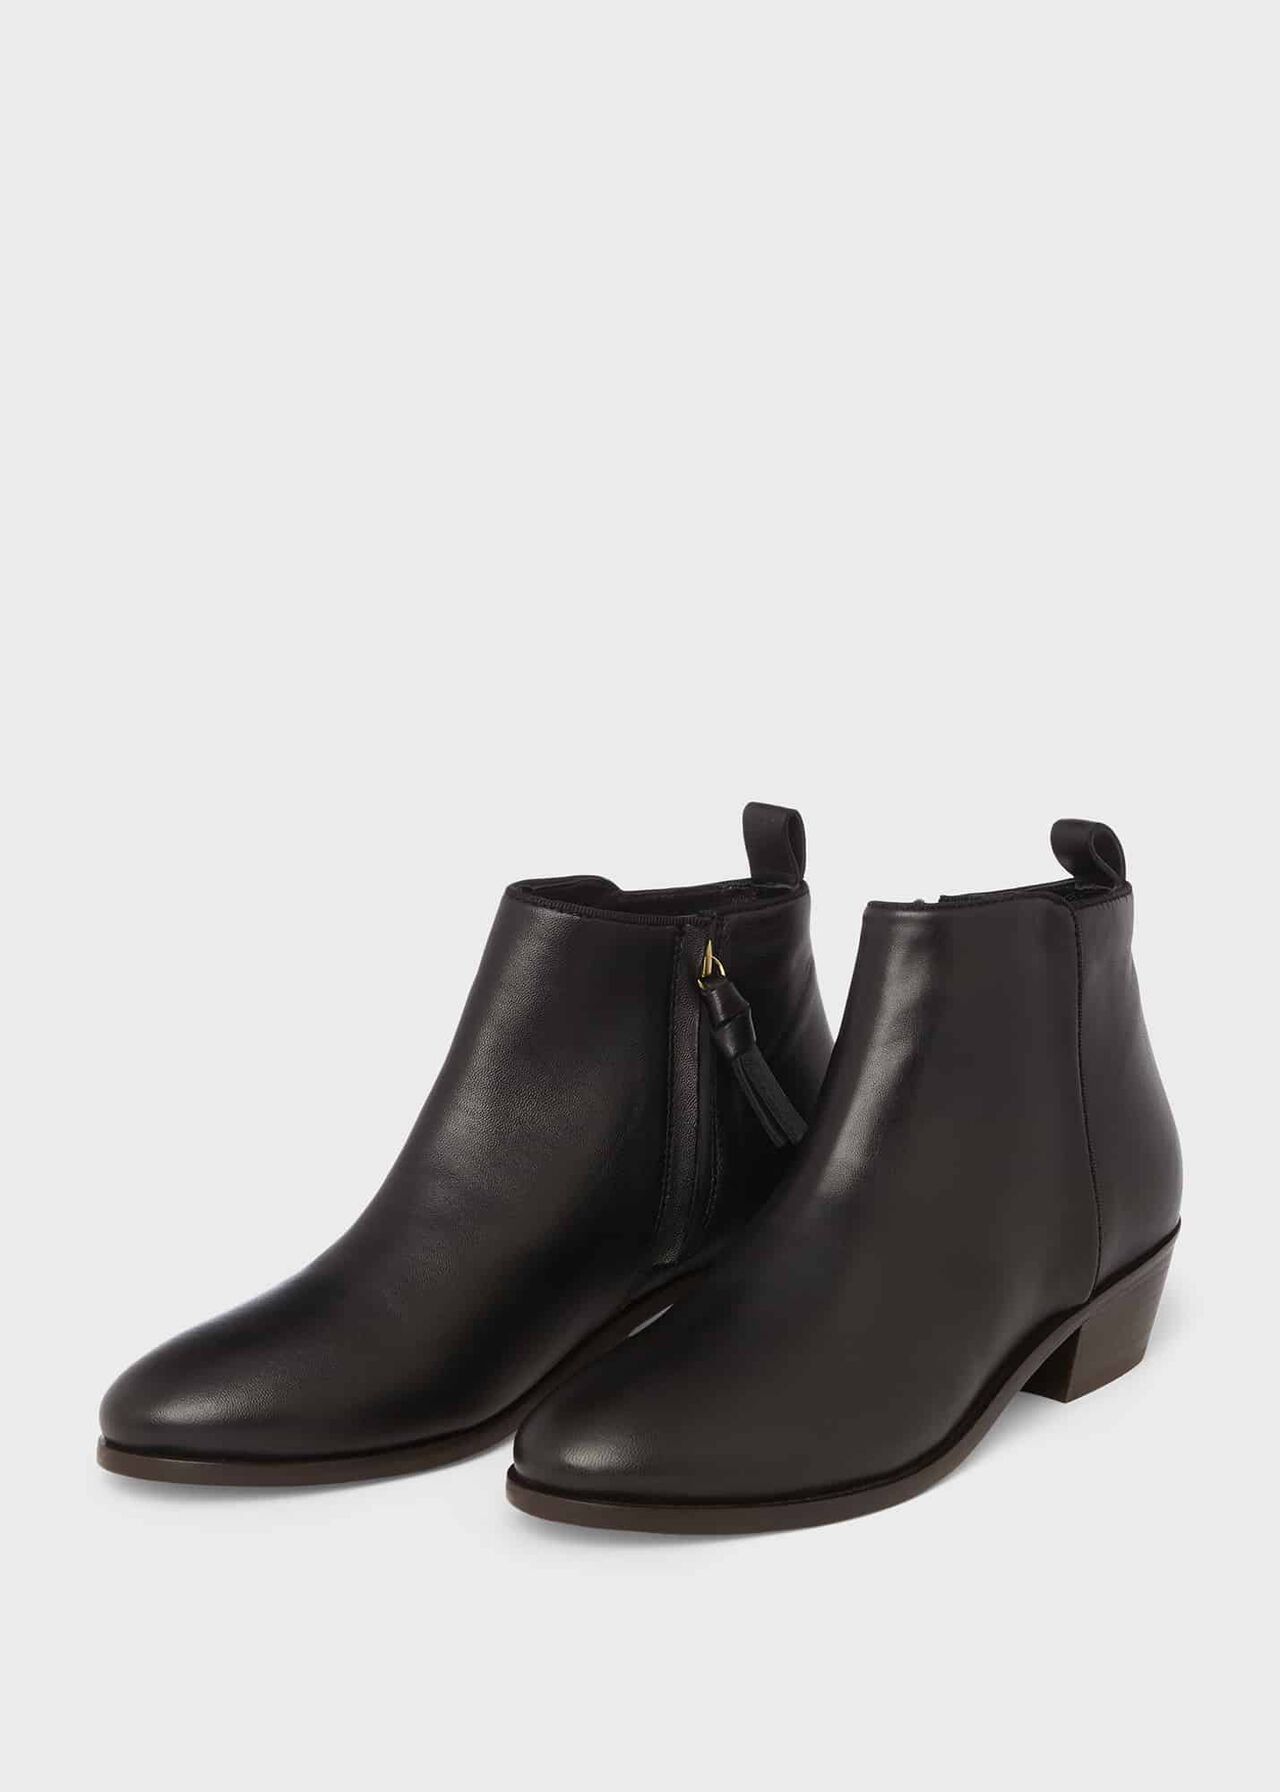 Rosabel Leather Ankle Boots, Black, hi-res